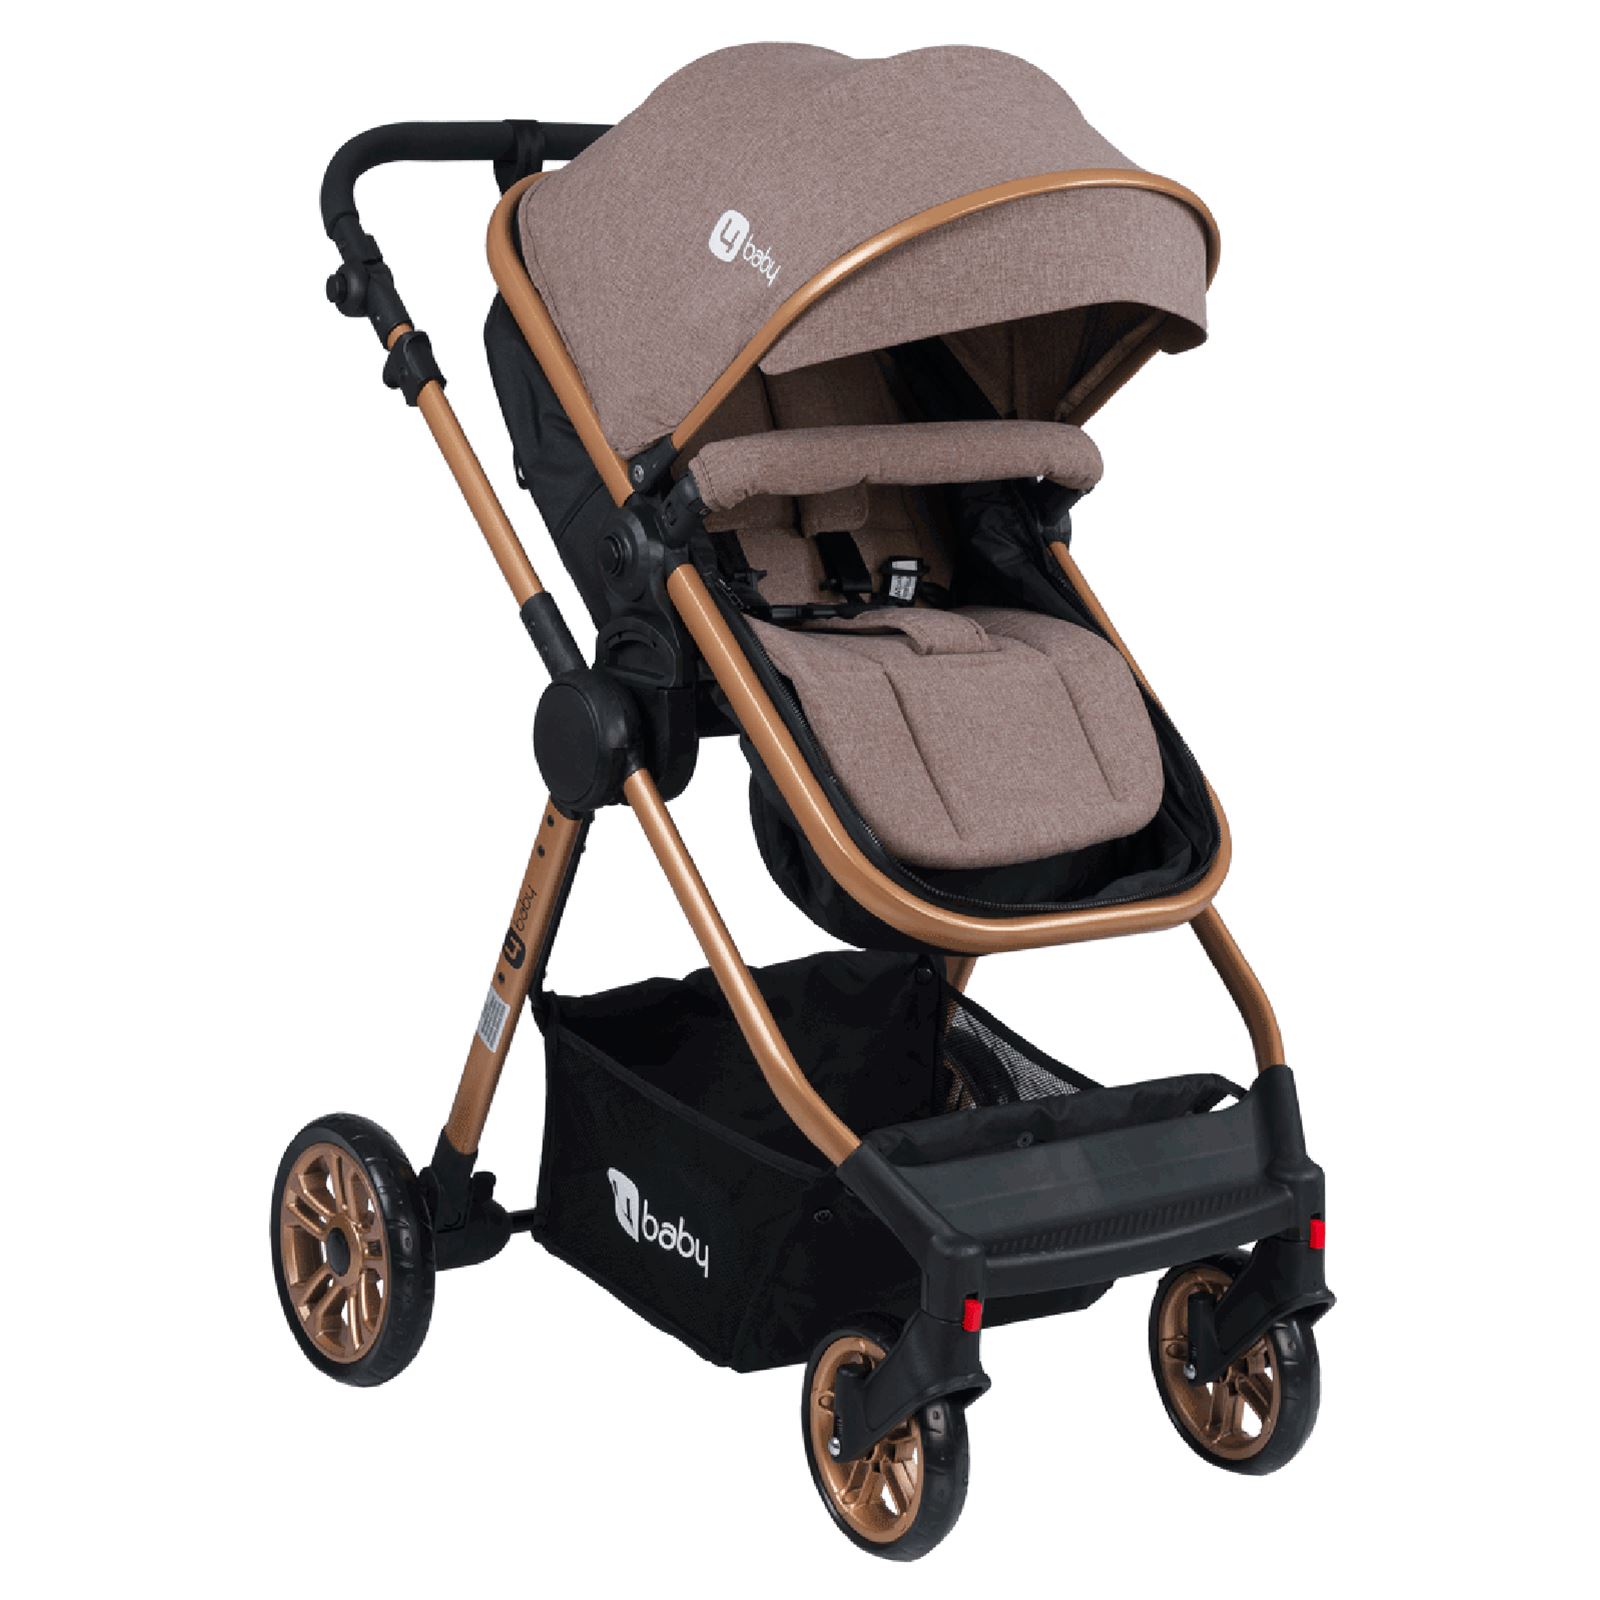 4 Baby Comfort Gold Travel Sistem Bebek Arabası Kahverengi